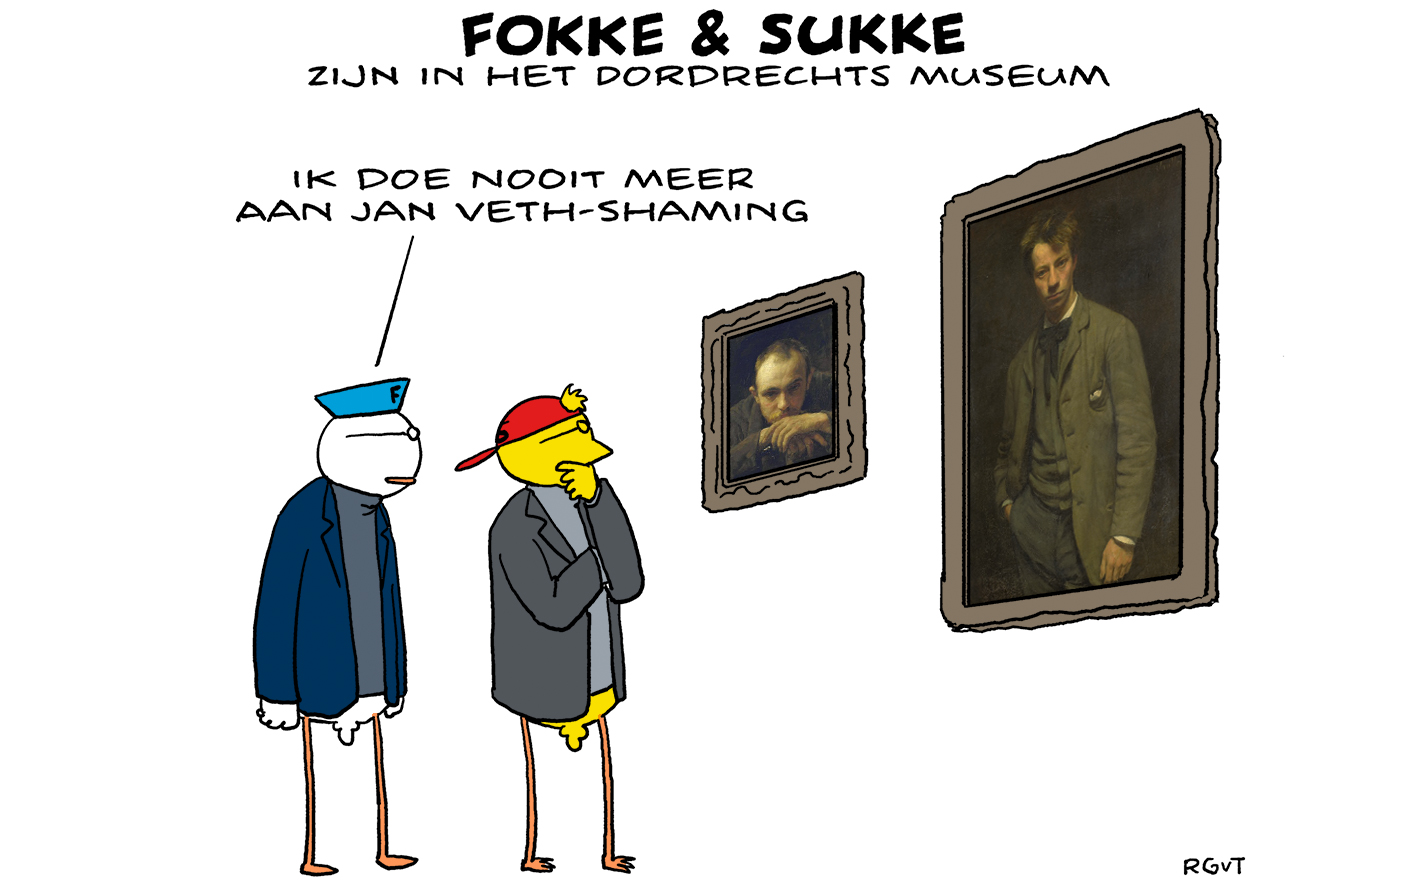 F&S zijn in het Dordrechts Museum (NRC, ma, 20-03-23)